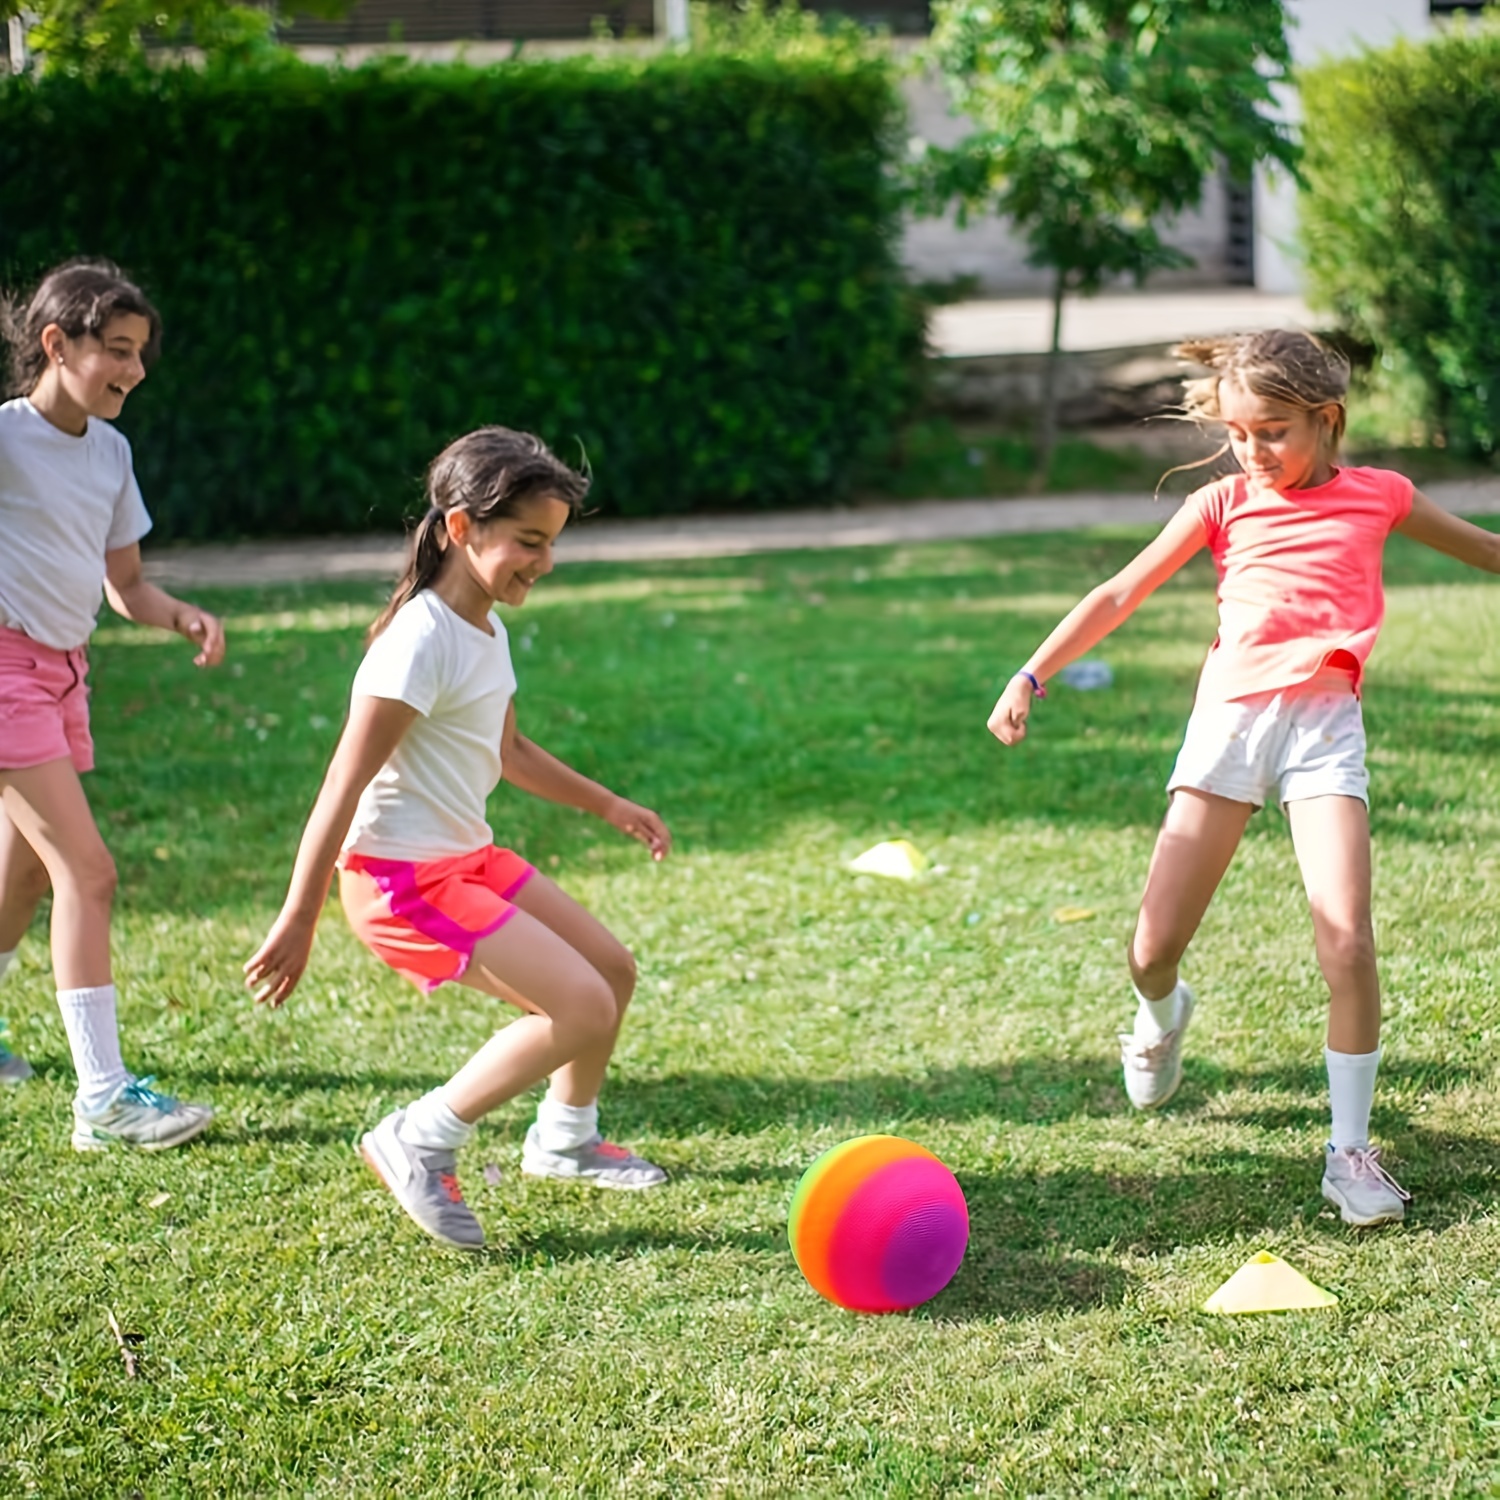 AppleRound Paquete de 4 pelotas deportivas con 1 bomba para niños pequeños  y niños: 1 pelota de fútbol de 5 pulgadas, pelota de baloncesto de 5